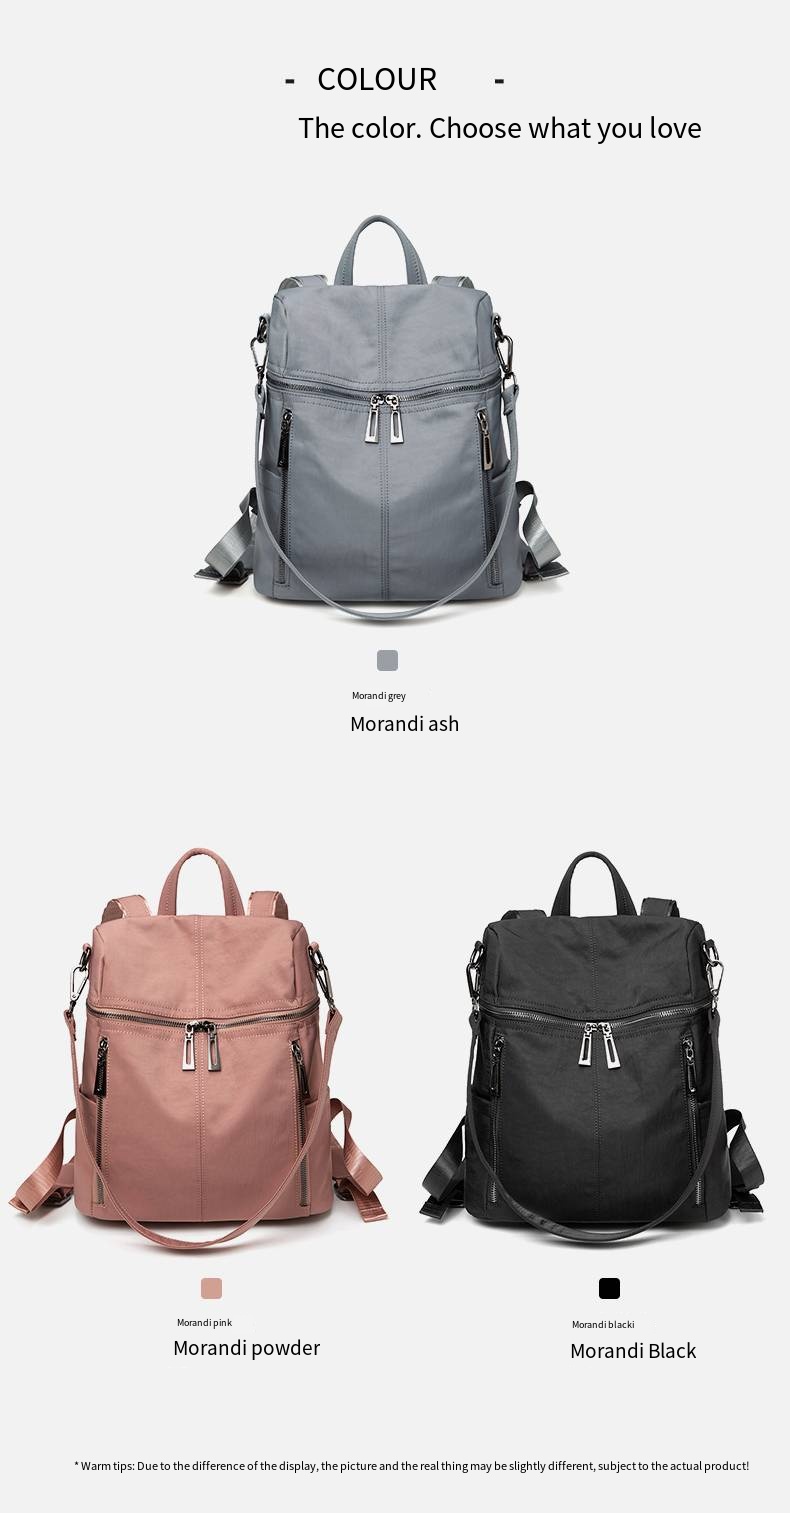 stylish backpacks